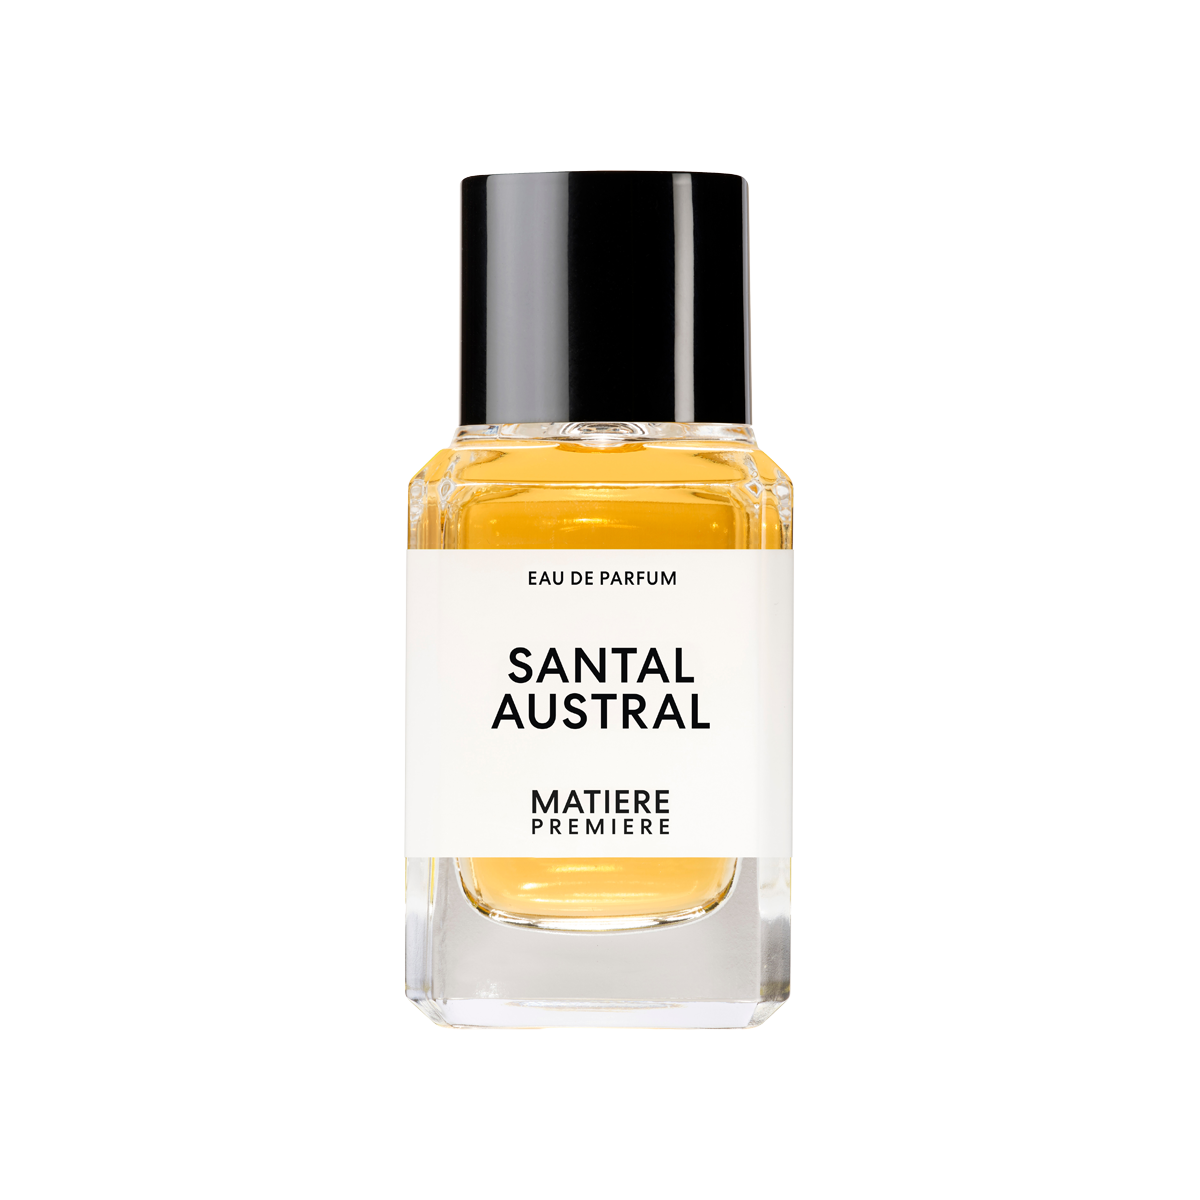 Matiere Premiere - Santal Austral Eau de Parfum